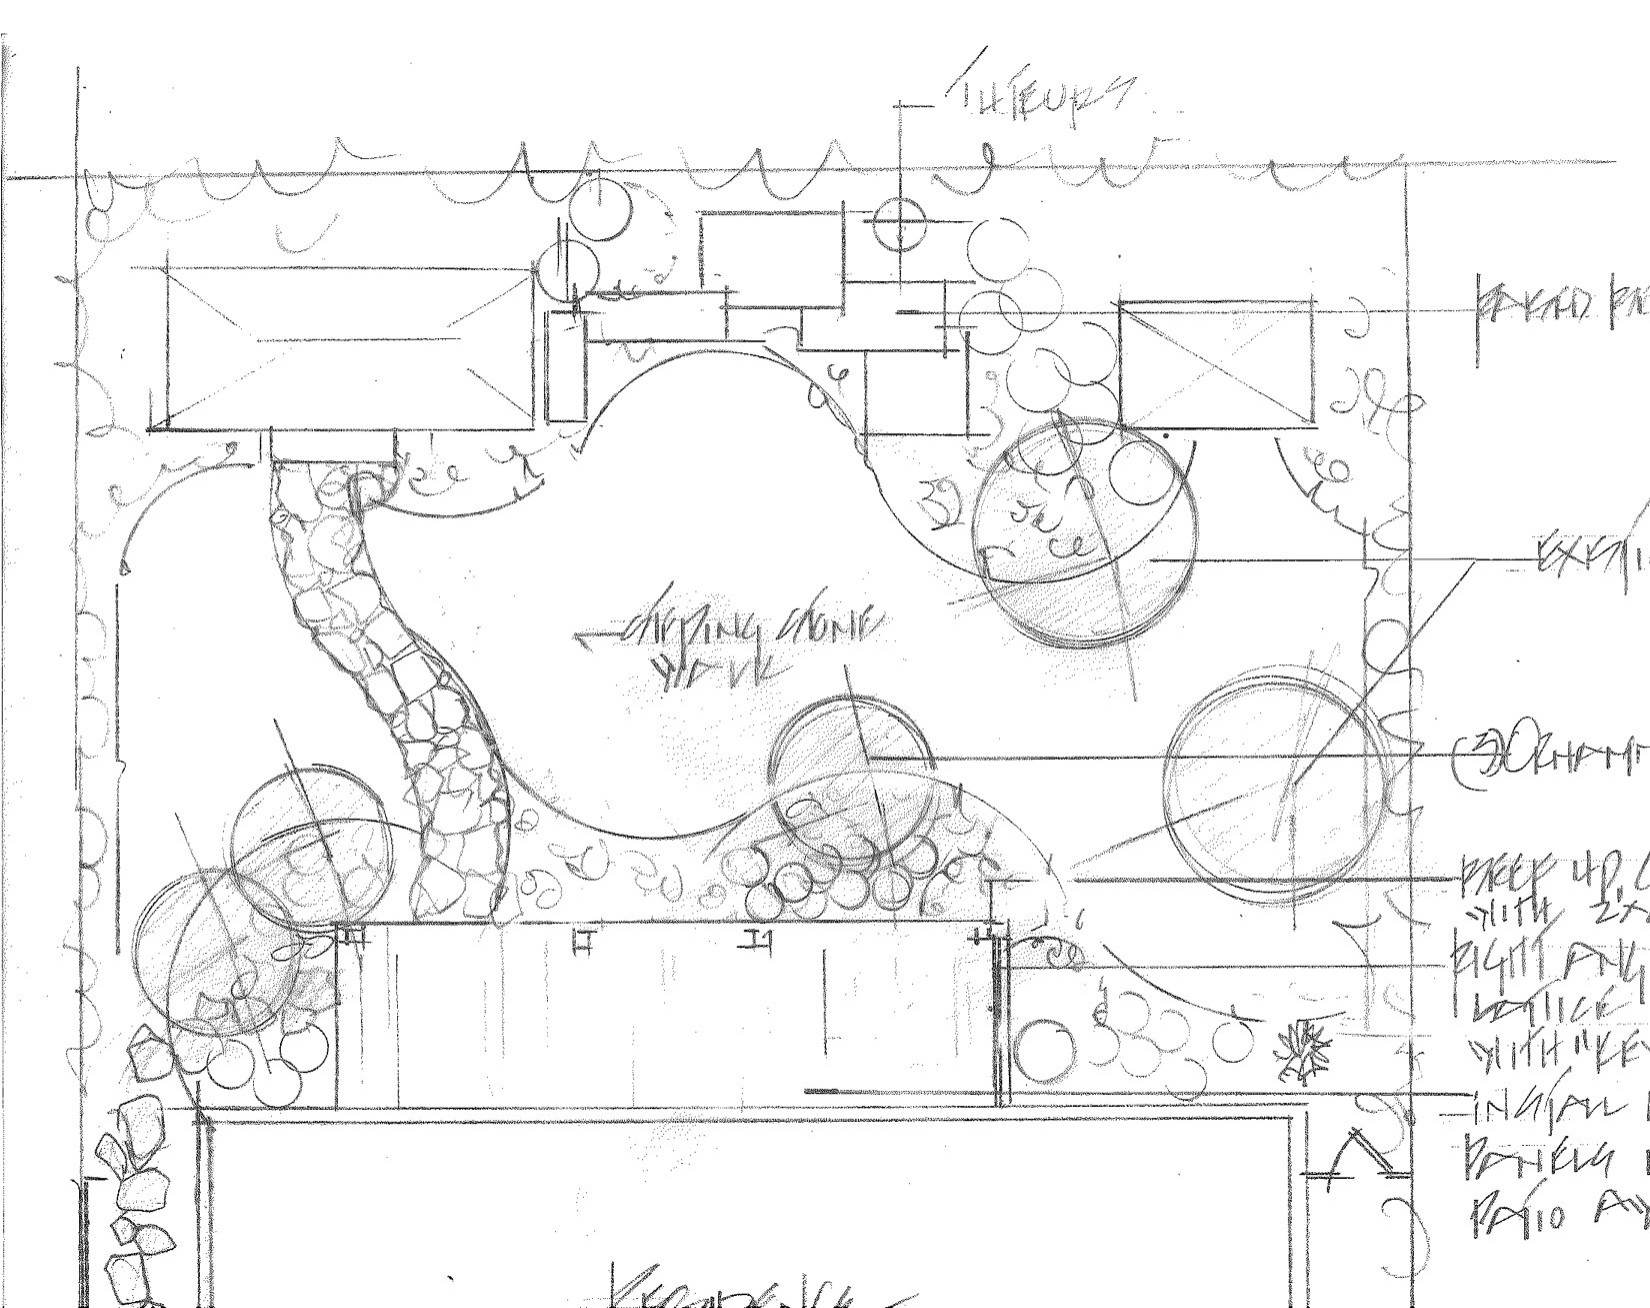 Landscape Architecture and Garden Design Plans